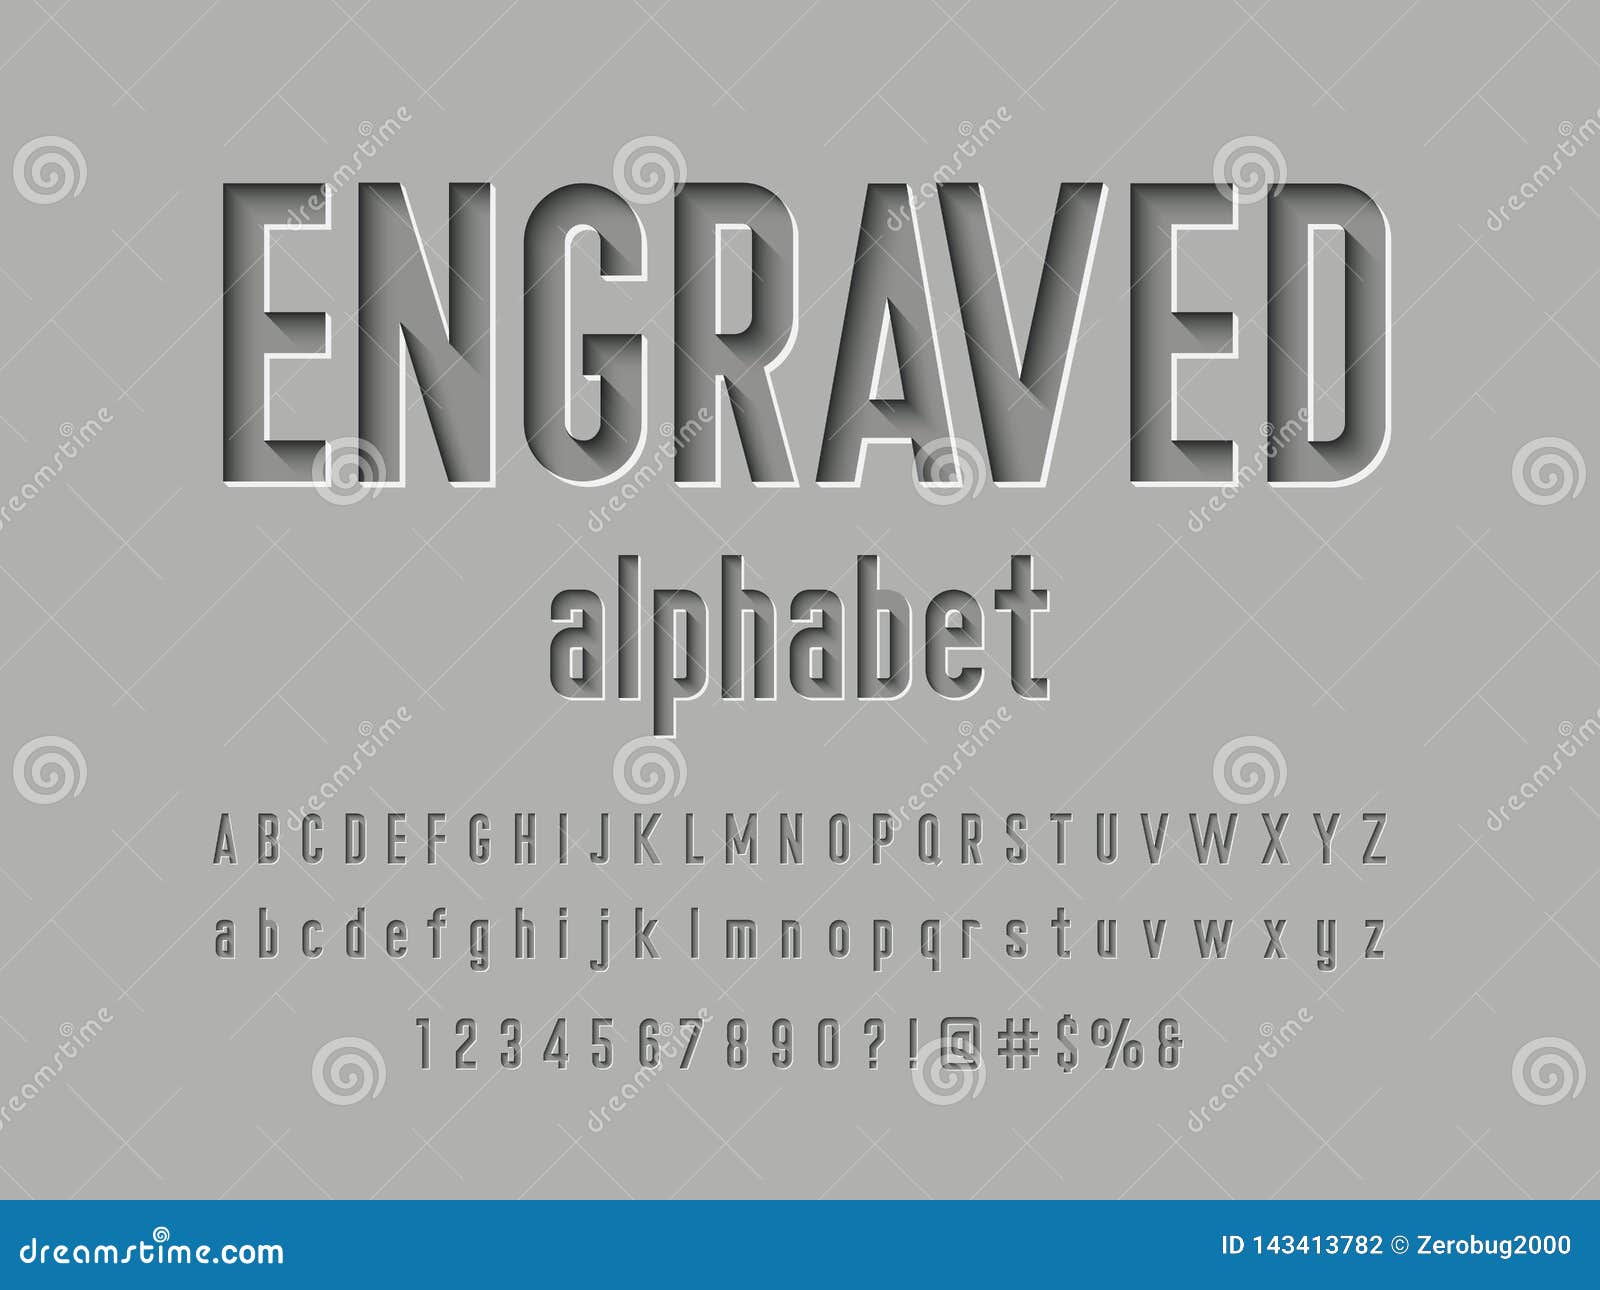 engraved font